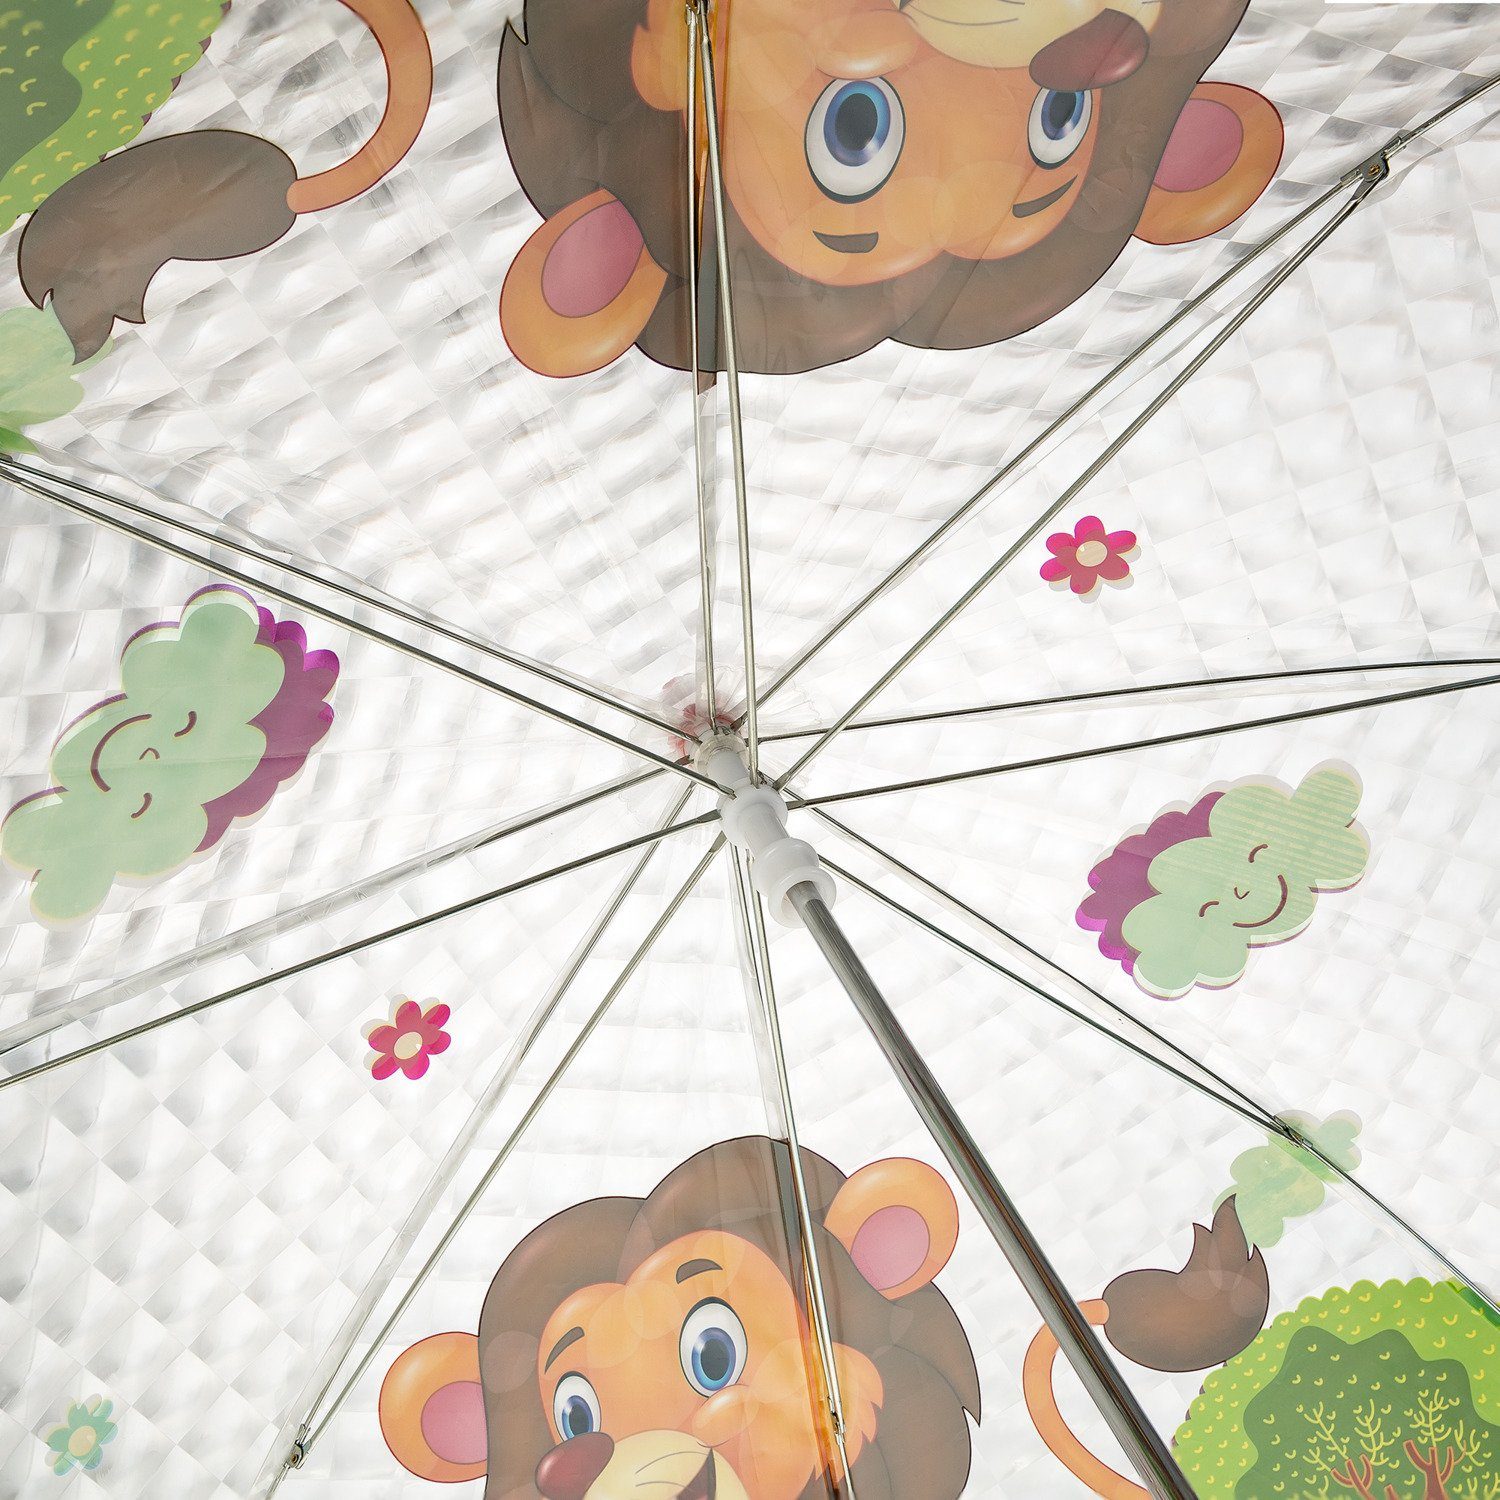 Kinderregenschirm Jungen Taschenregenschirm - für und Idena mit putzigem Idena 50047 Mädchen,